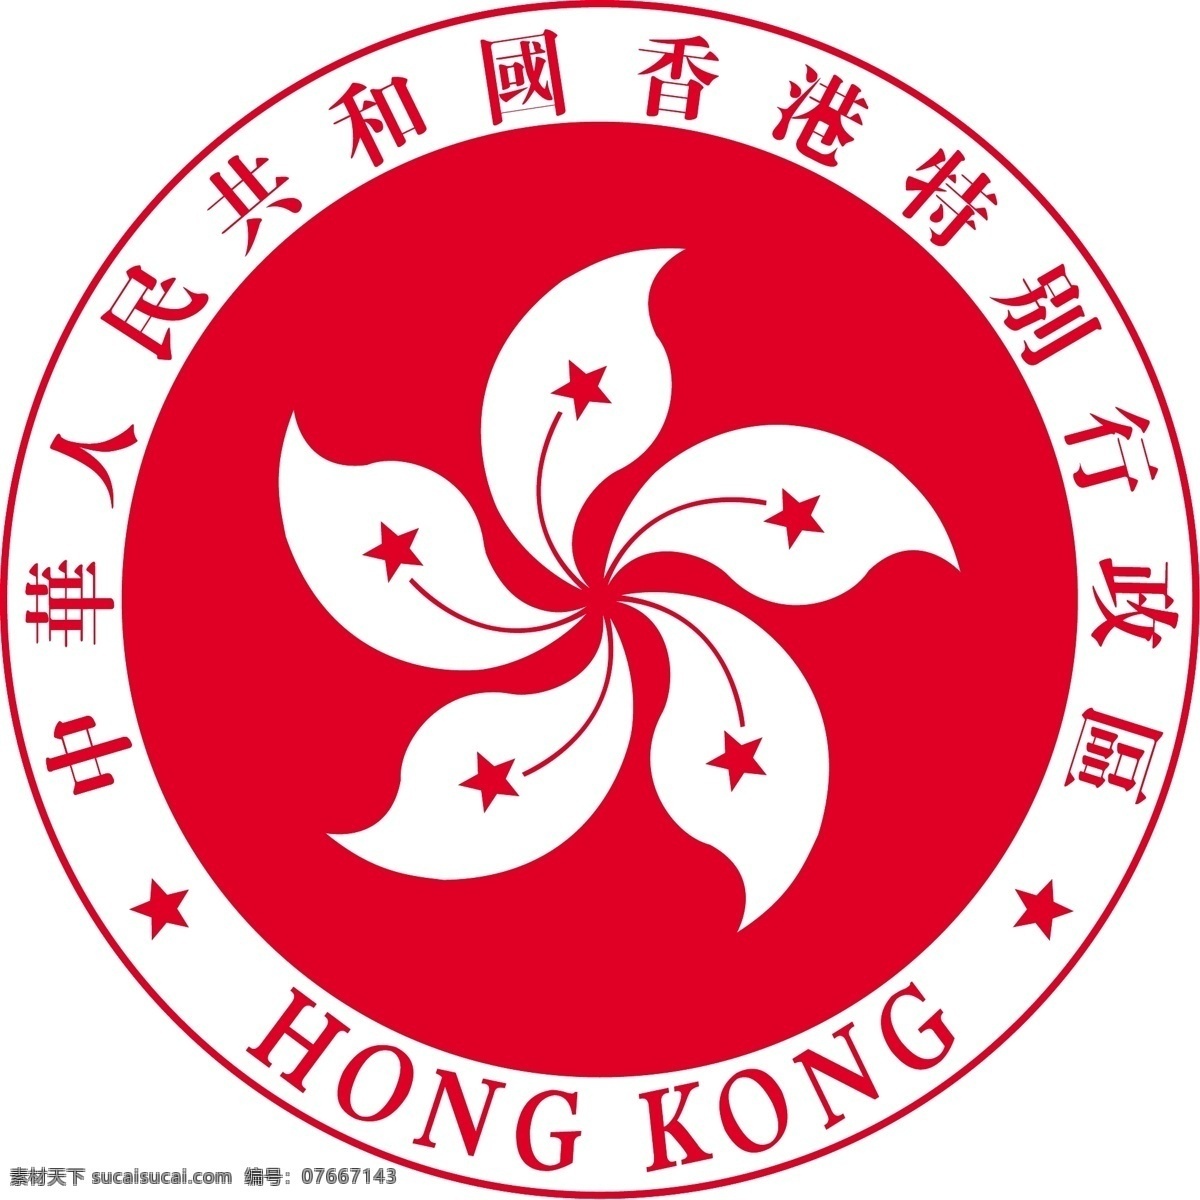 香港特别行政 区区 徽 香港 区徽 香港区徽 矢量 公共标识 公共标志 标识 标志图标 公共标识标志